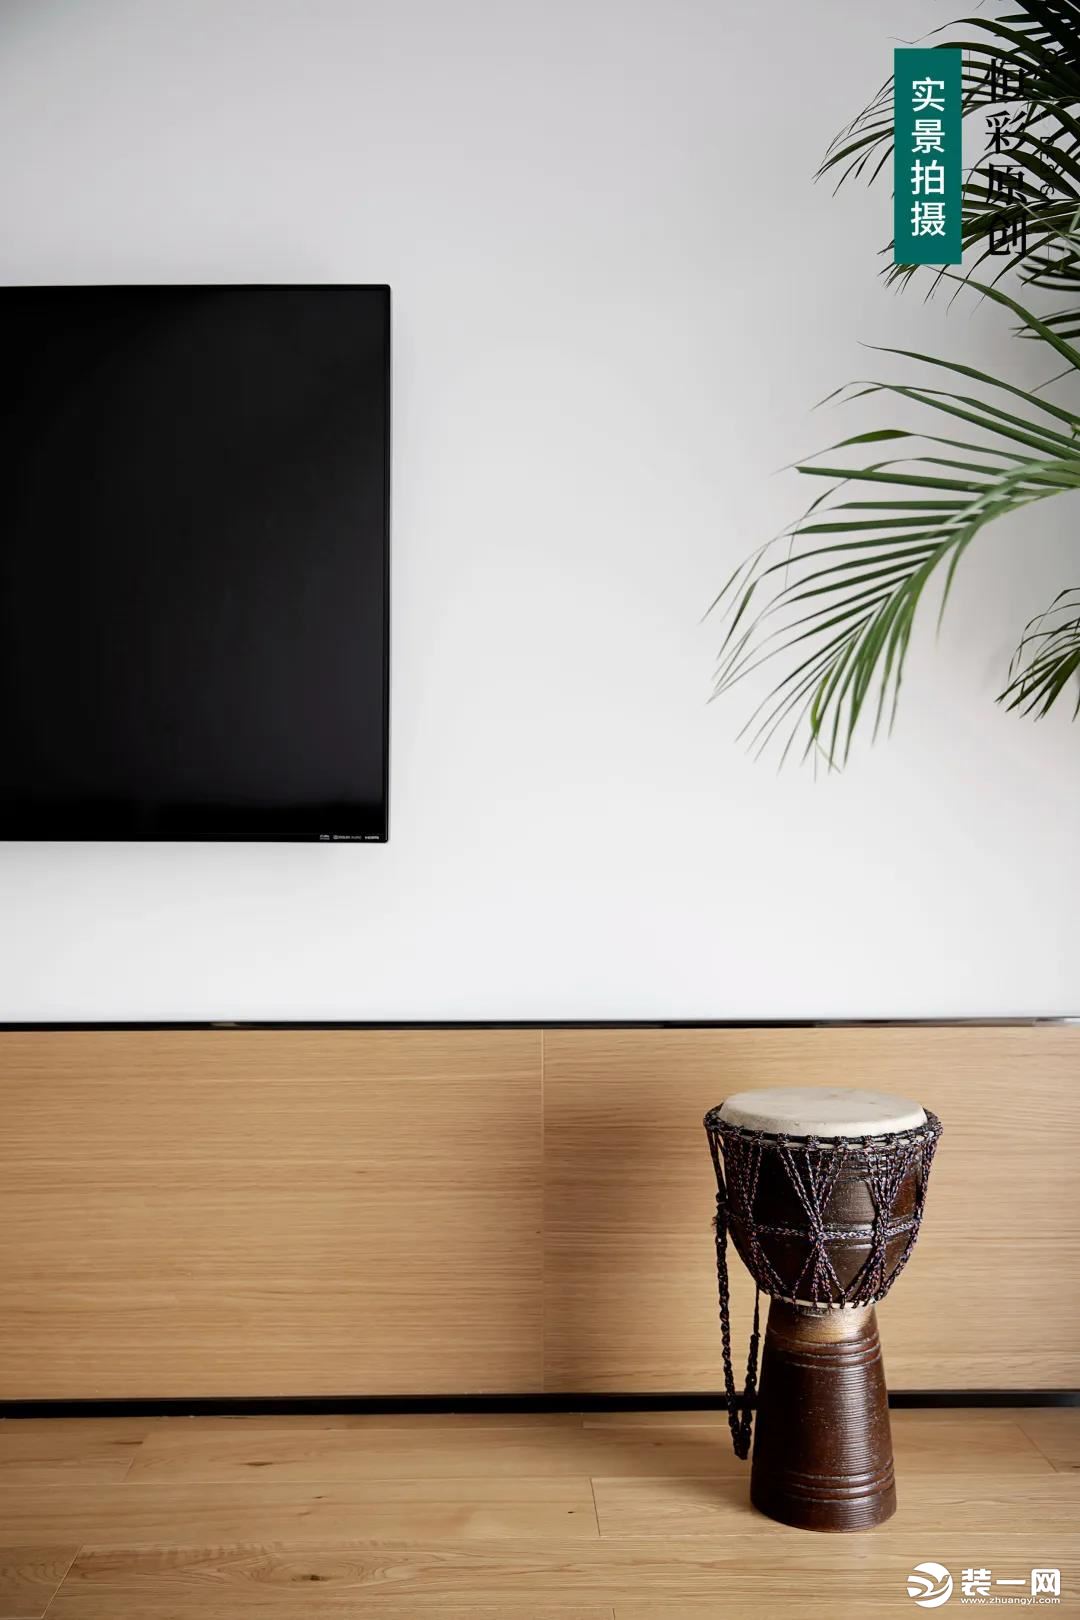 电视机背景墙利用木饰面和大白墙拼接，在整个木饰面背景下“框”出一片大白墙作为电视机背景。由地面到墙面